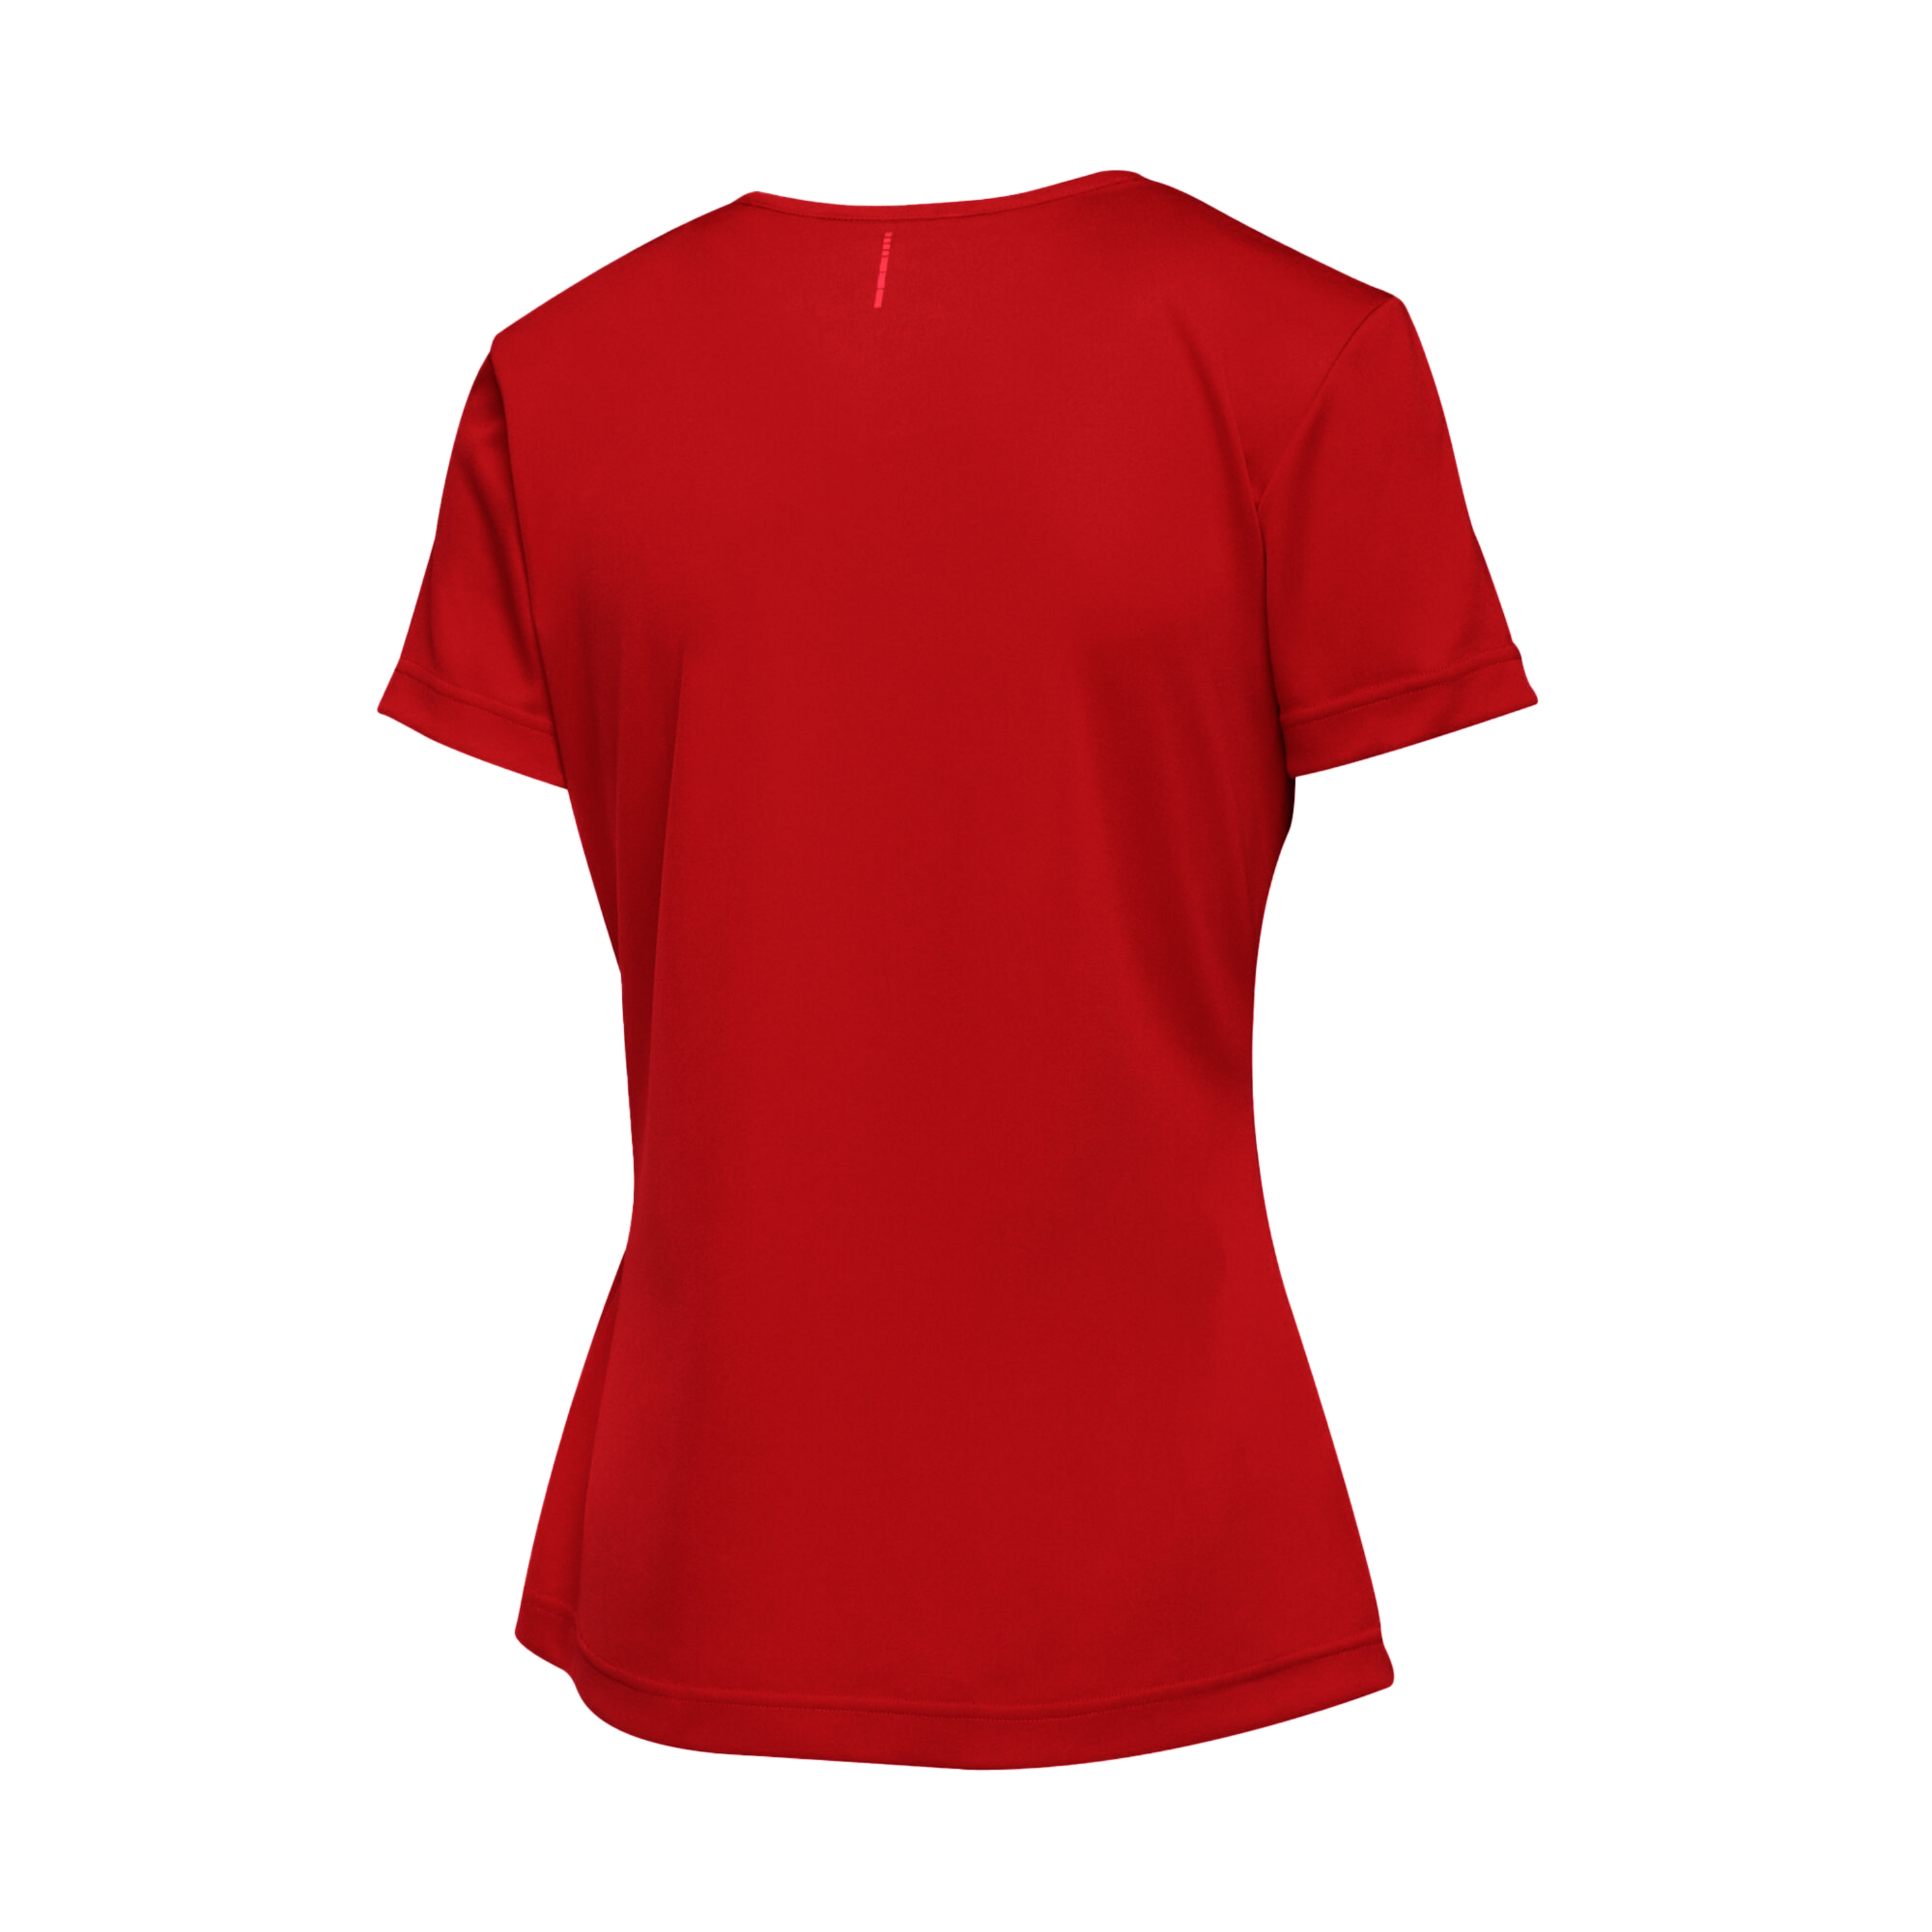 Camiseta Das Mulheres E Senhoras De Torino Regatta (Vermelho Clássico)